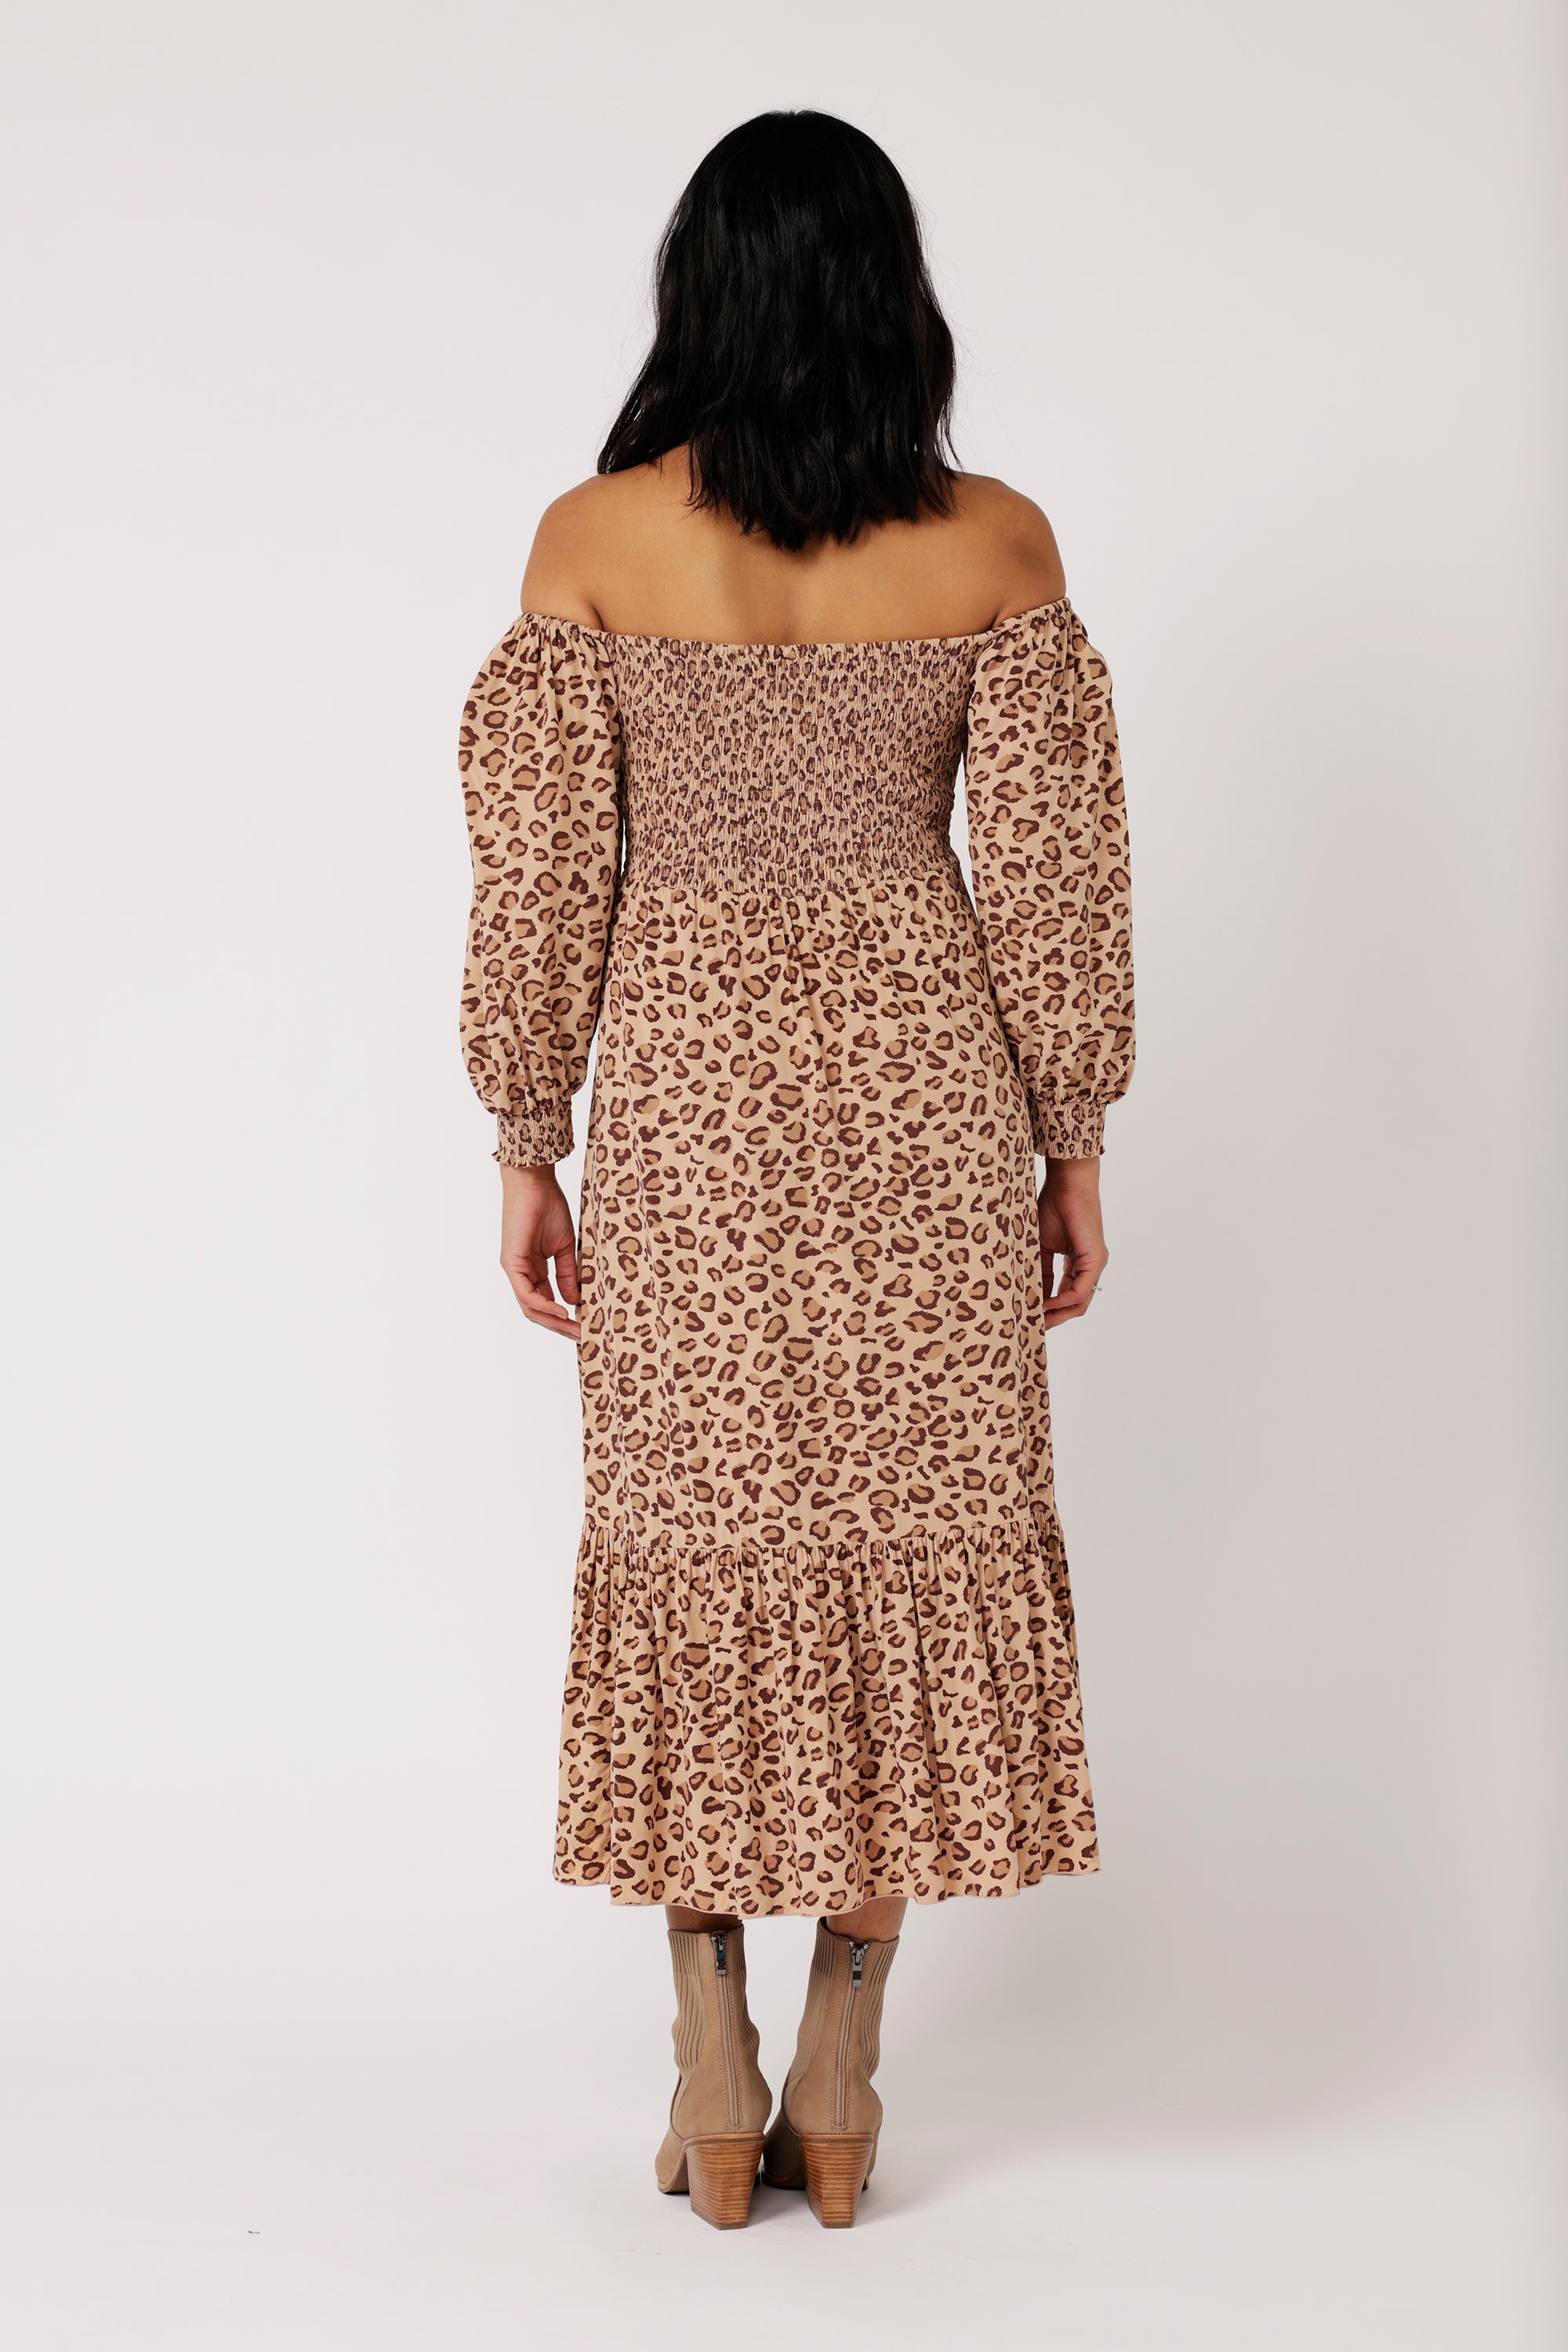 Harper Dress MAXI | Leopard - Saffron Road